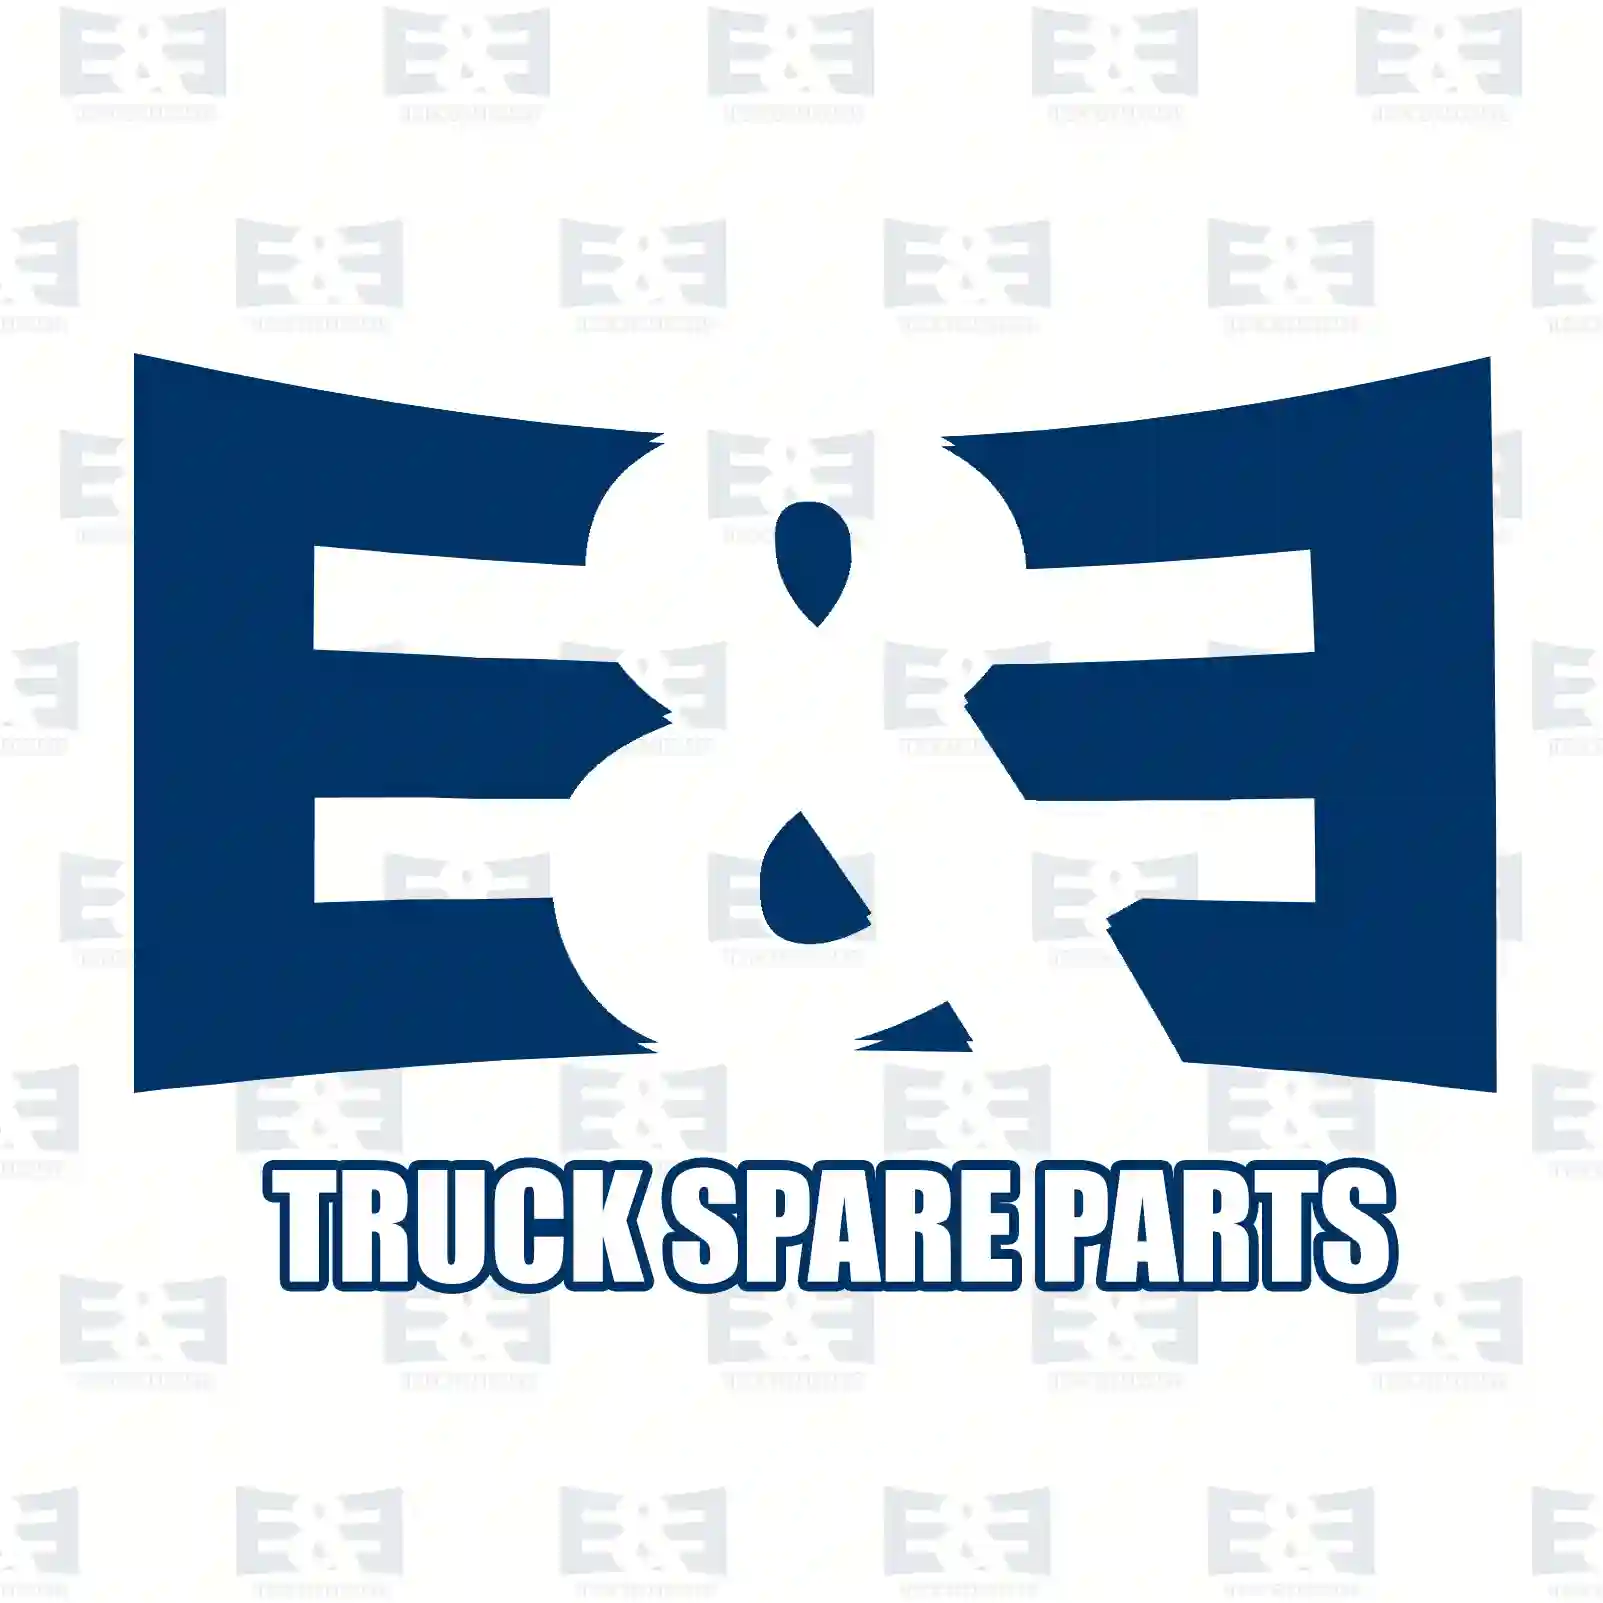 V-stay, left, 2E2283275, 3563301410, 6133300010, ||  2E2283275 E&E Truck Spare Parts | Truck Spare Parts, Auotomotive Spare Parts V-stay, left, 2E2283275, 3563301410, 6133300010, ||  2E2283275 E&E Truck Spare Parts | Truck Spare Parts, Auotomotive Spare Parts